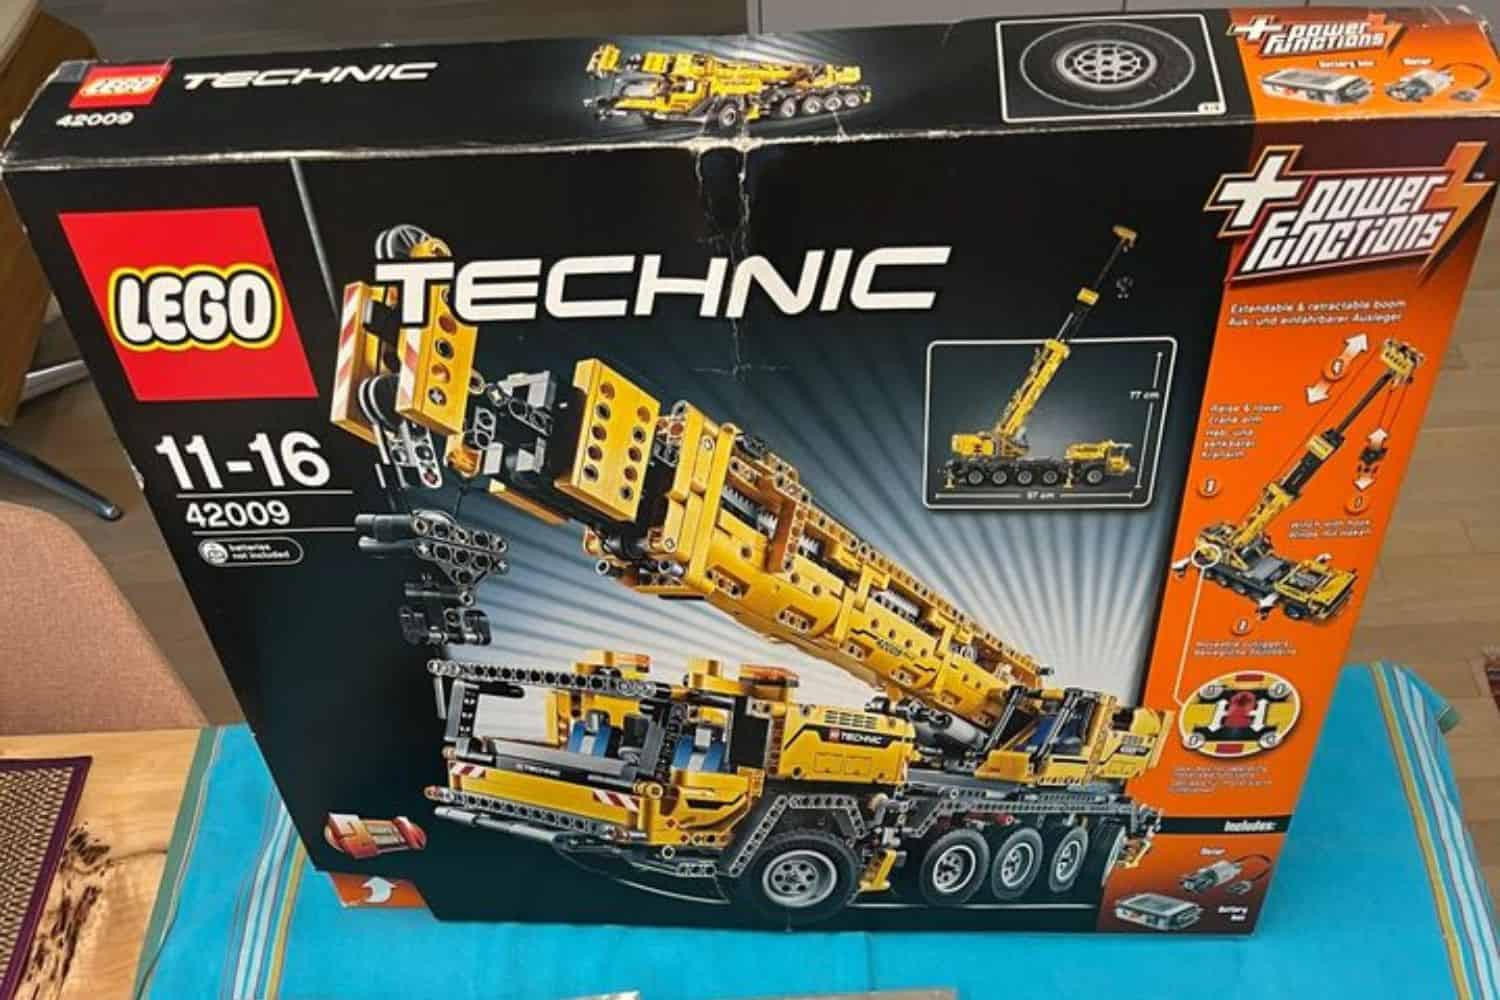 LEGO Technic Mobile Crane MK II 42009 